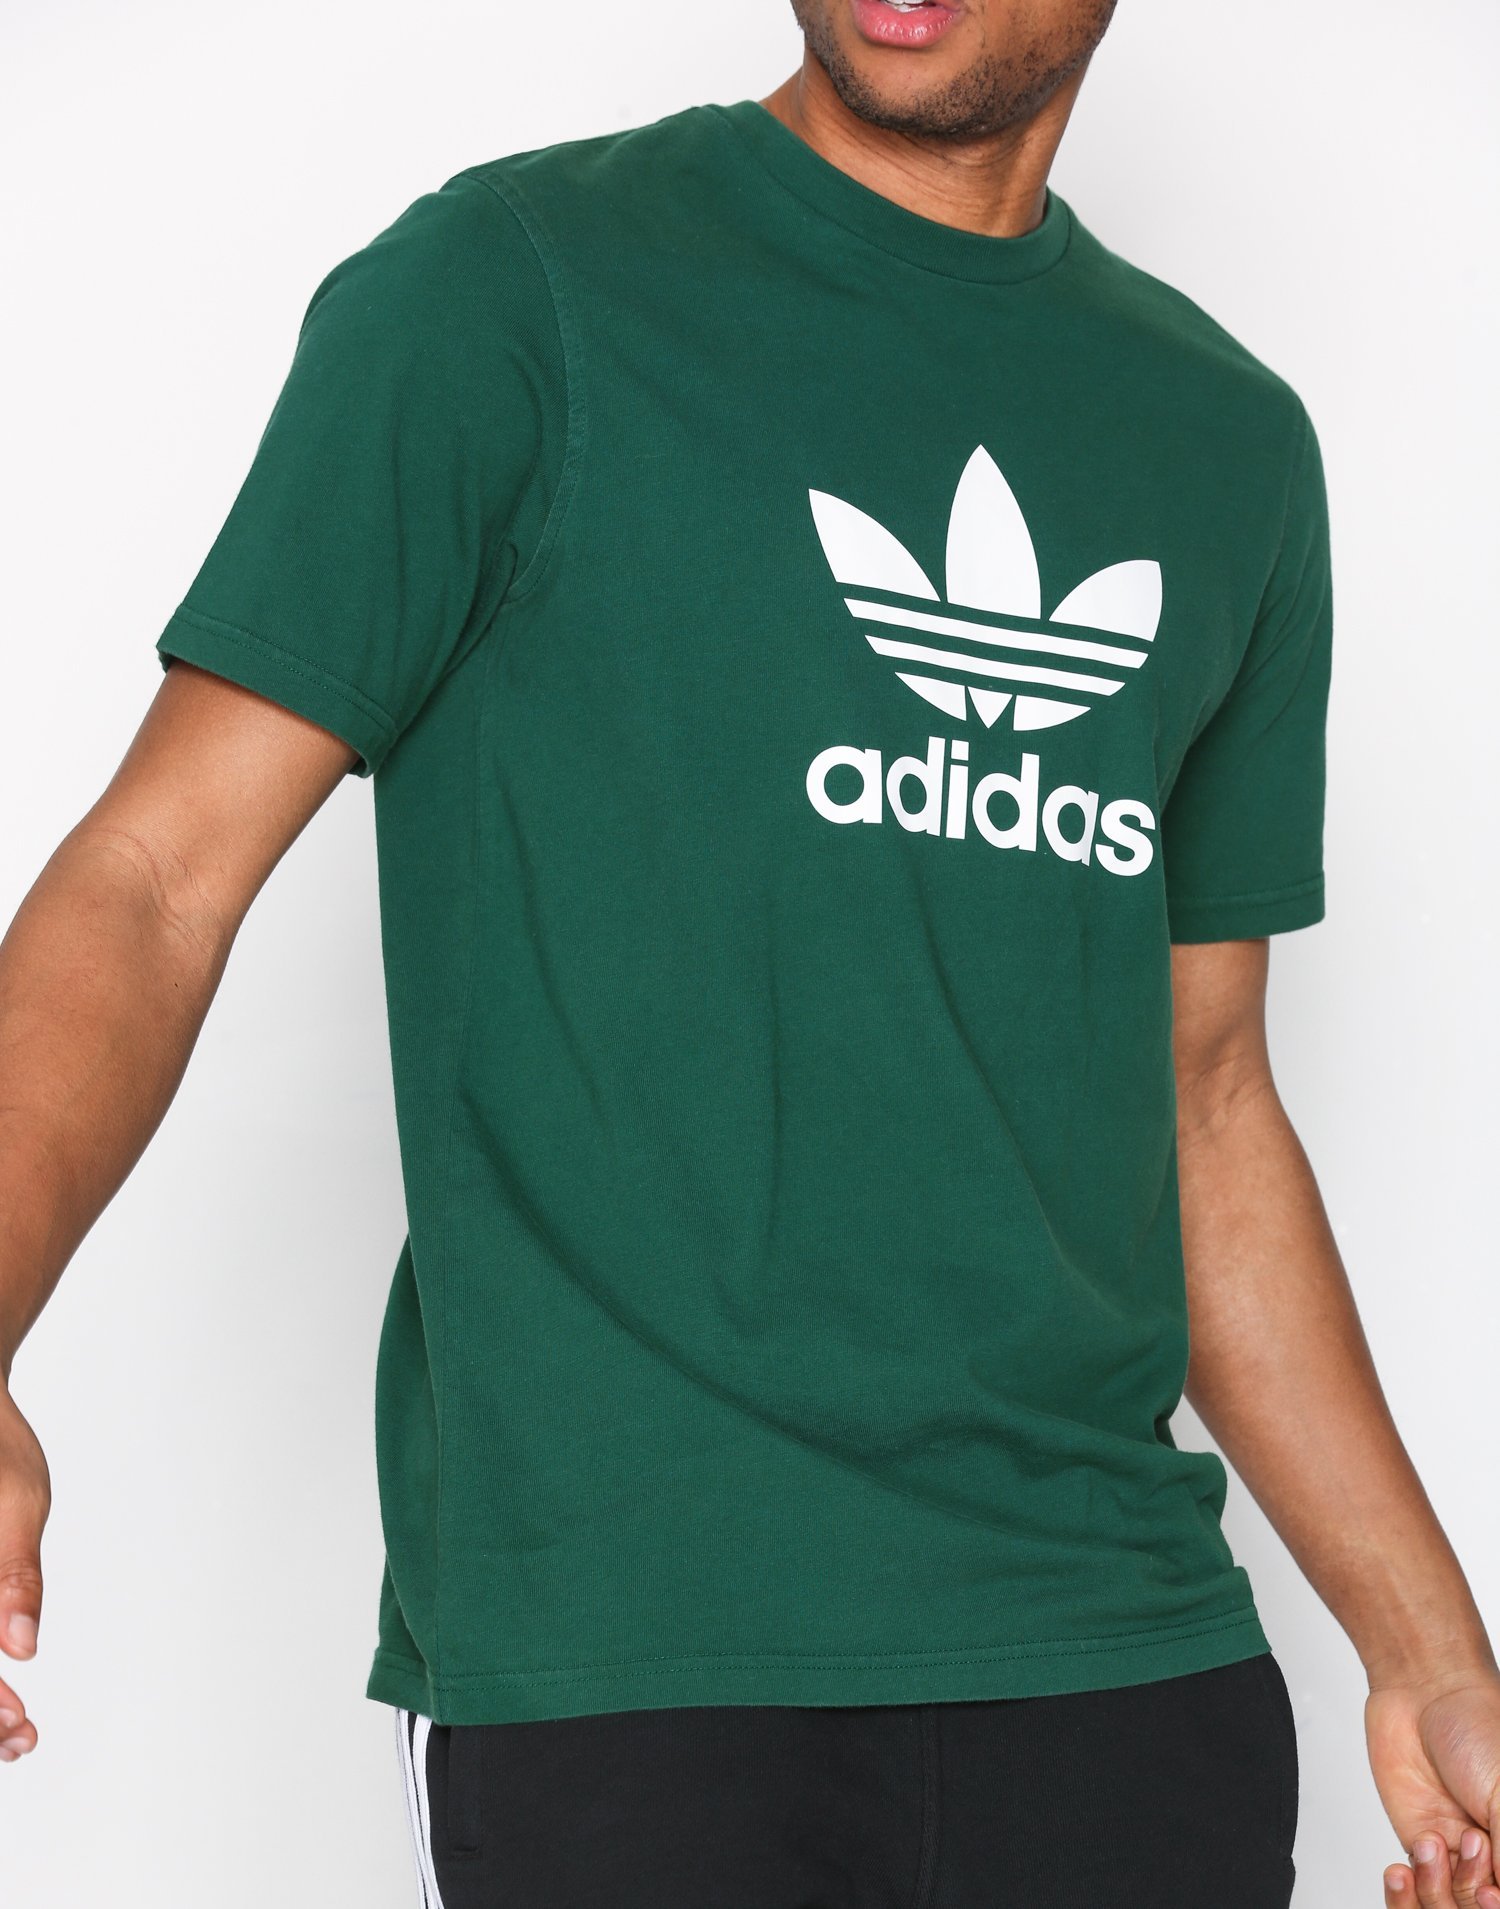 green adidas shirt mens